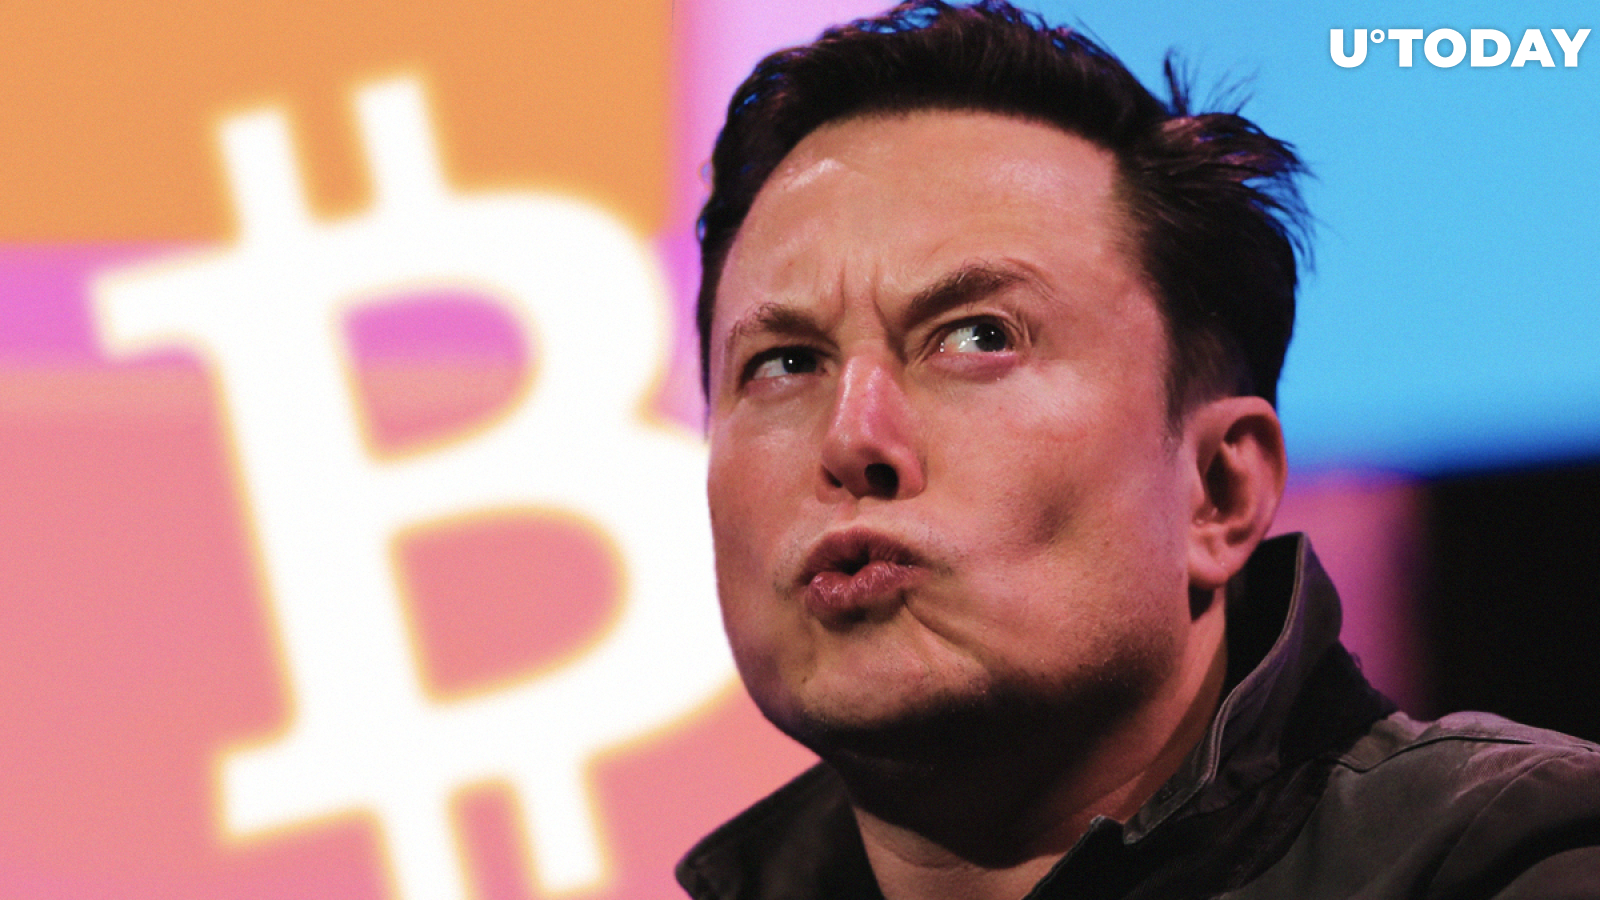 Bitcoin (BTC) Is Not My Safeword: Elon Musk